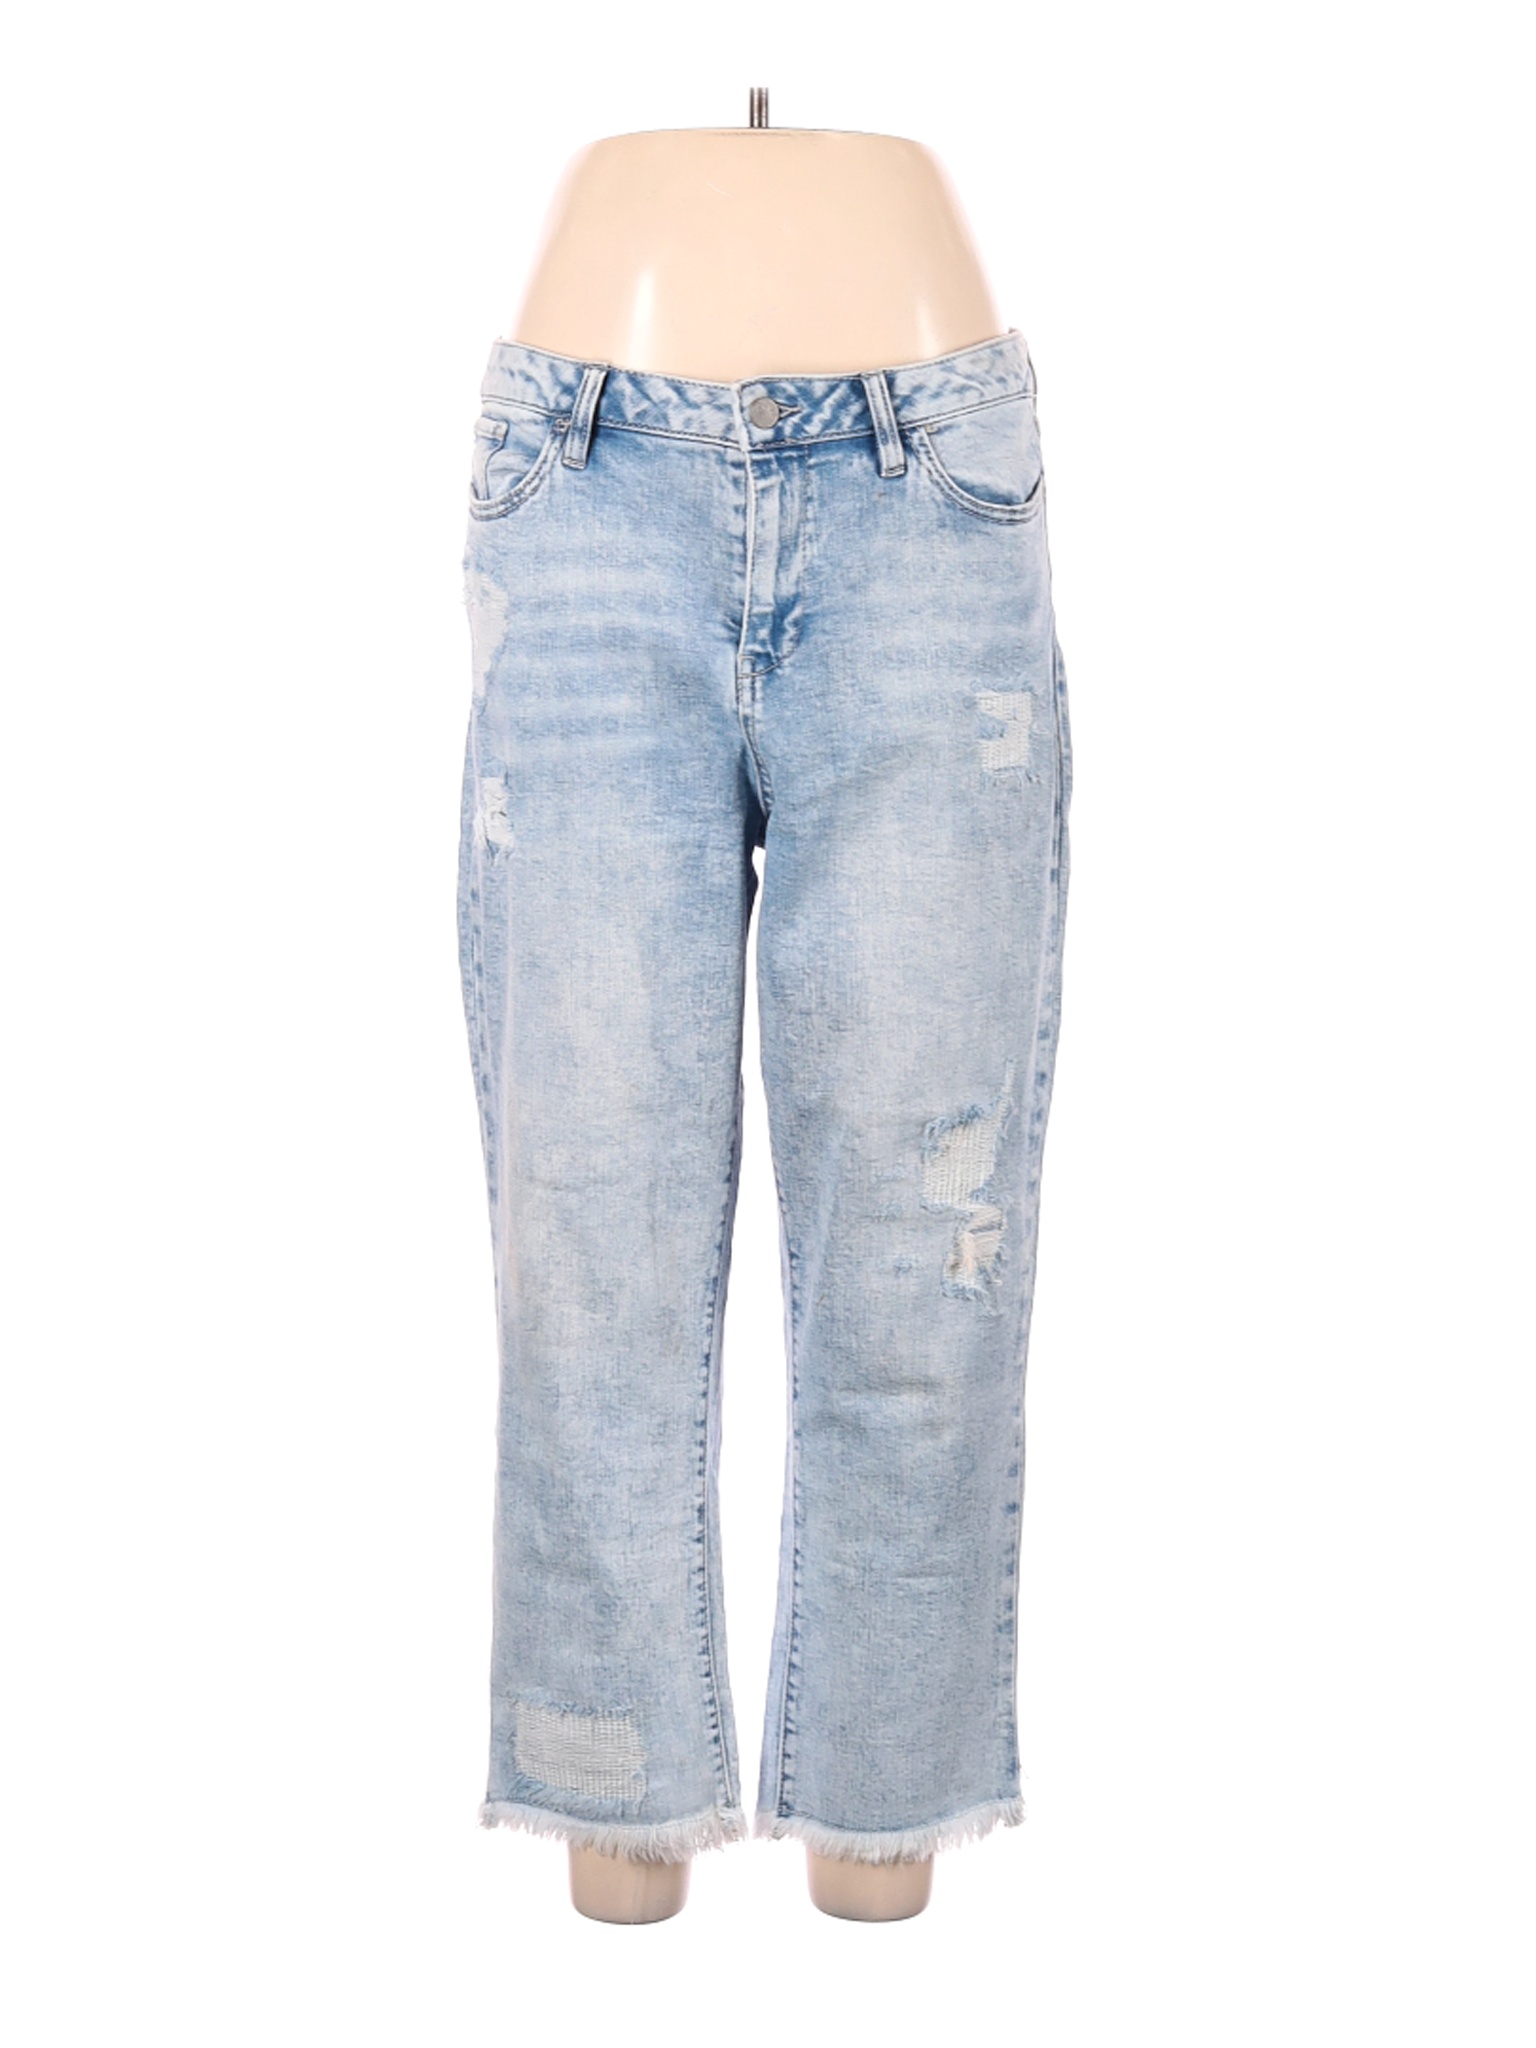 NWT Soho JEANS NEW YORK & COMPANY Women Blue Jeans 12 | eBay